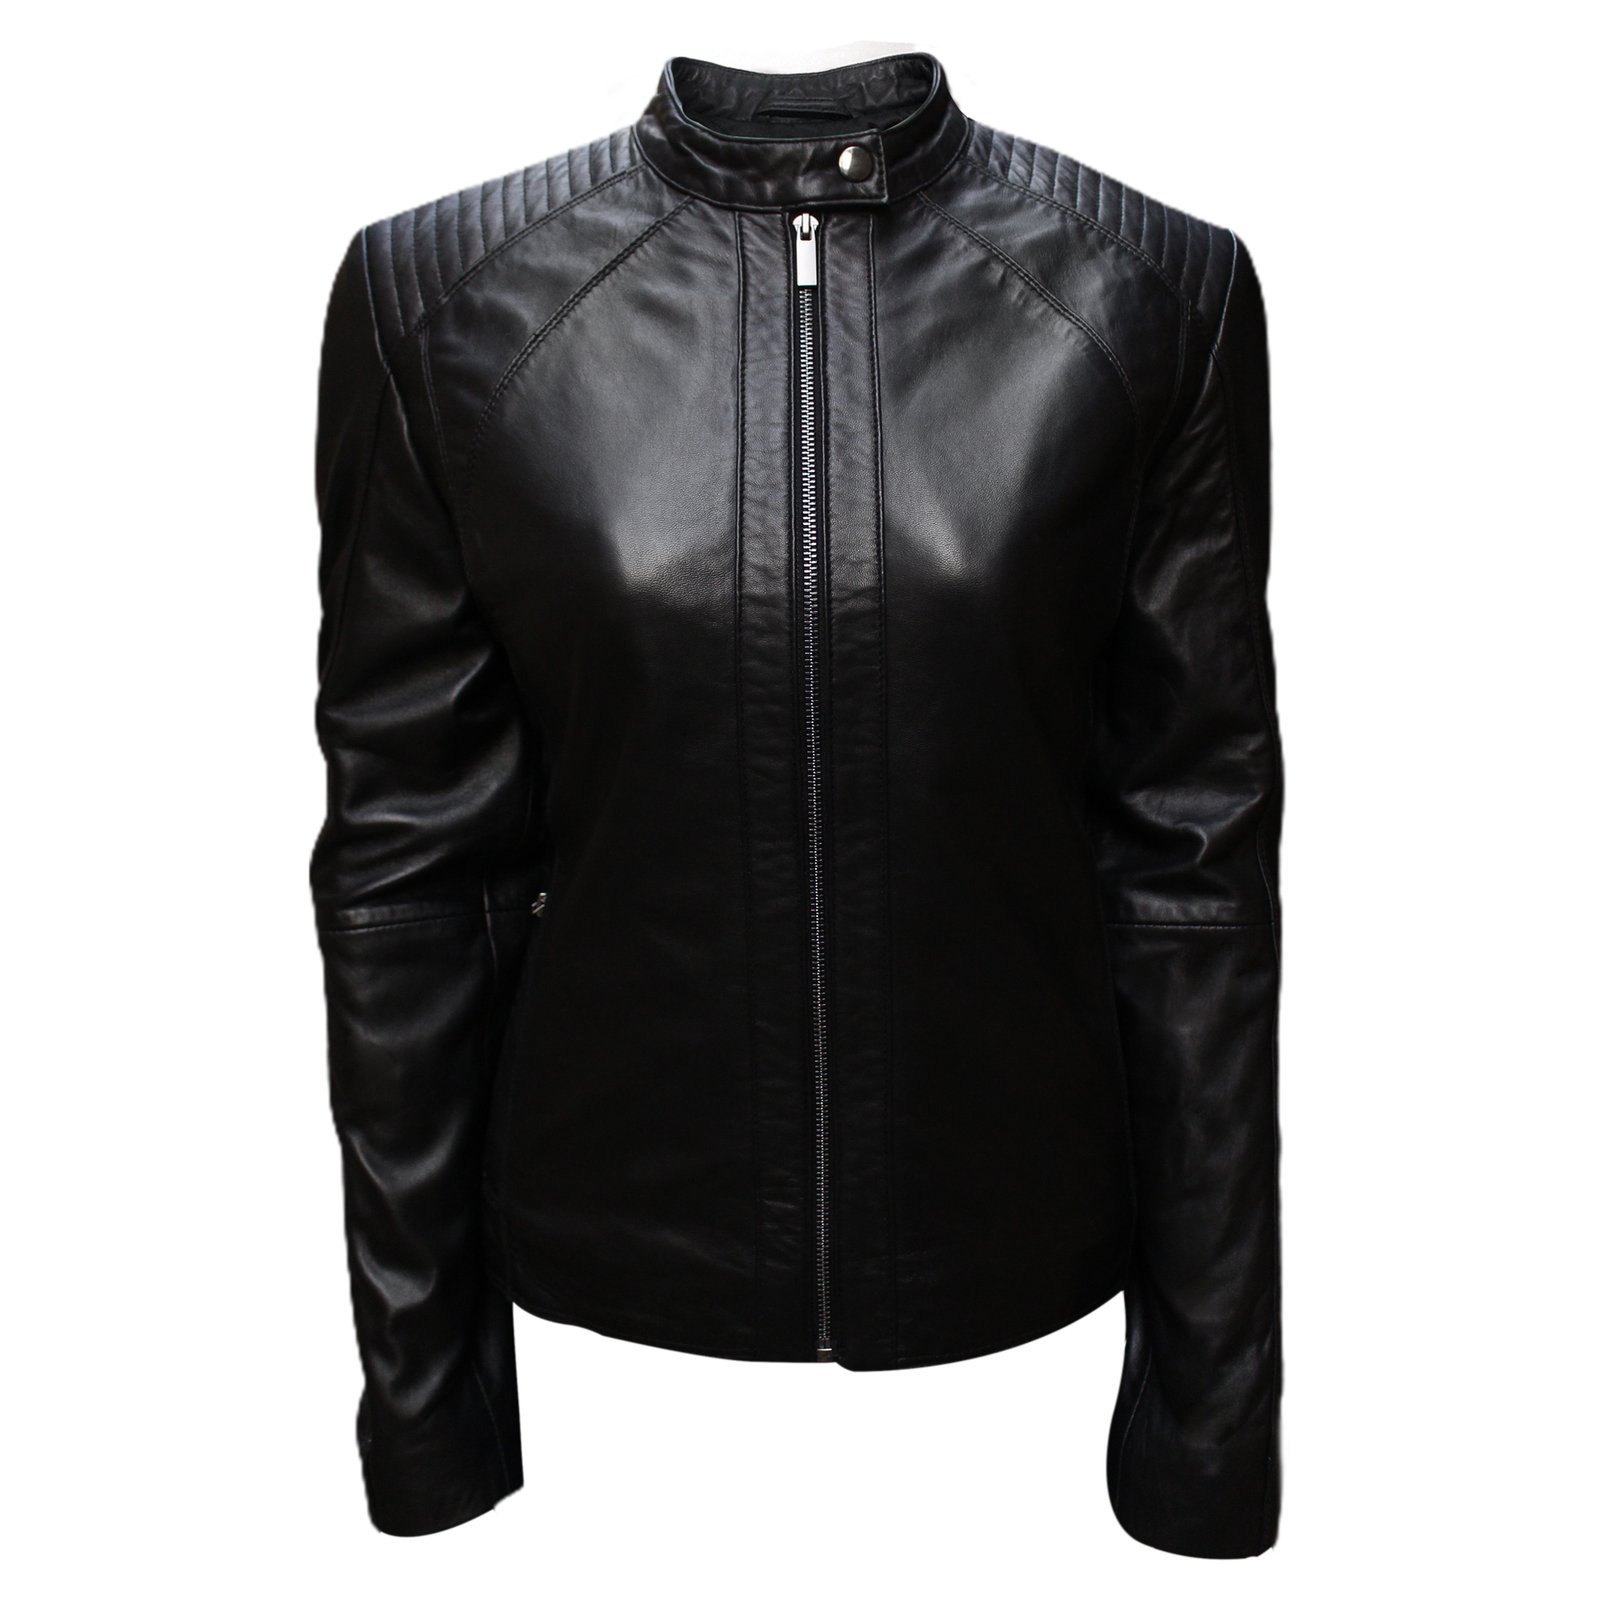 Stylish Bomber Black Leather Jacket For Women